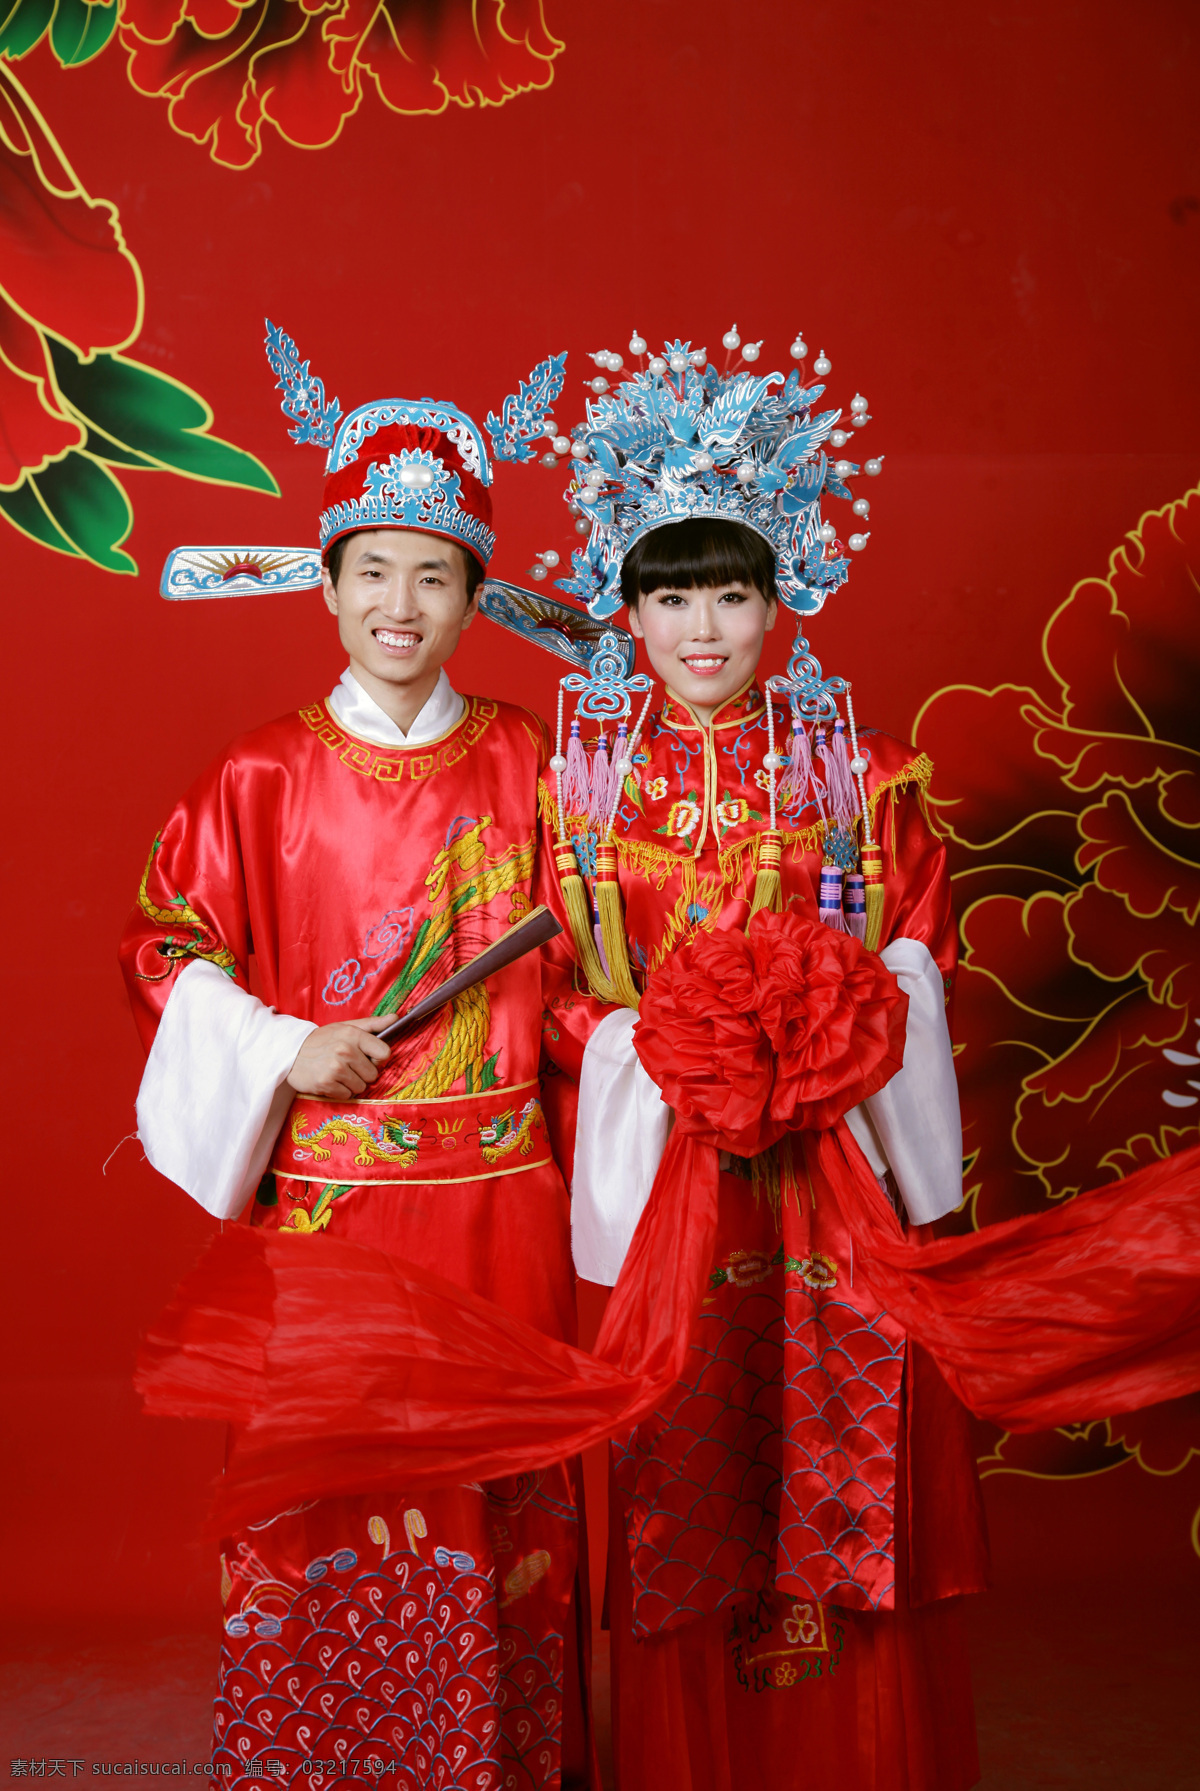 凤冠霞帔 红色 古装写真 绣球折扇 中国风 婚纱照片 人物摄影 人物图库